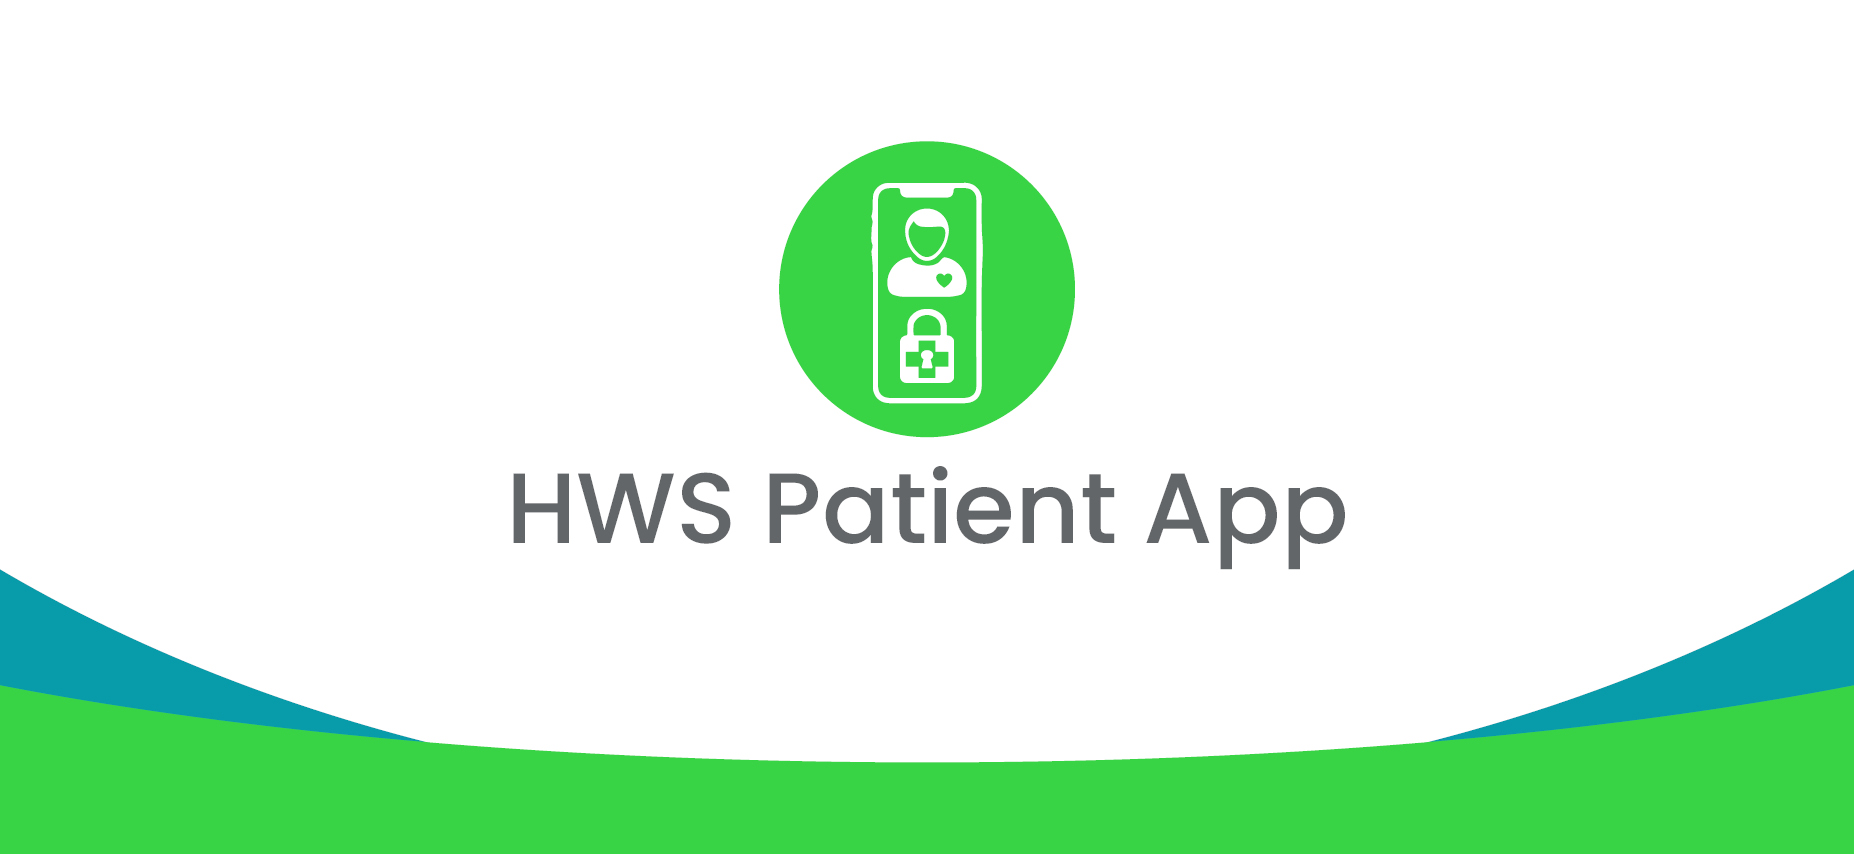 HWS Patient App 